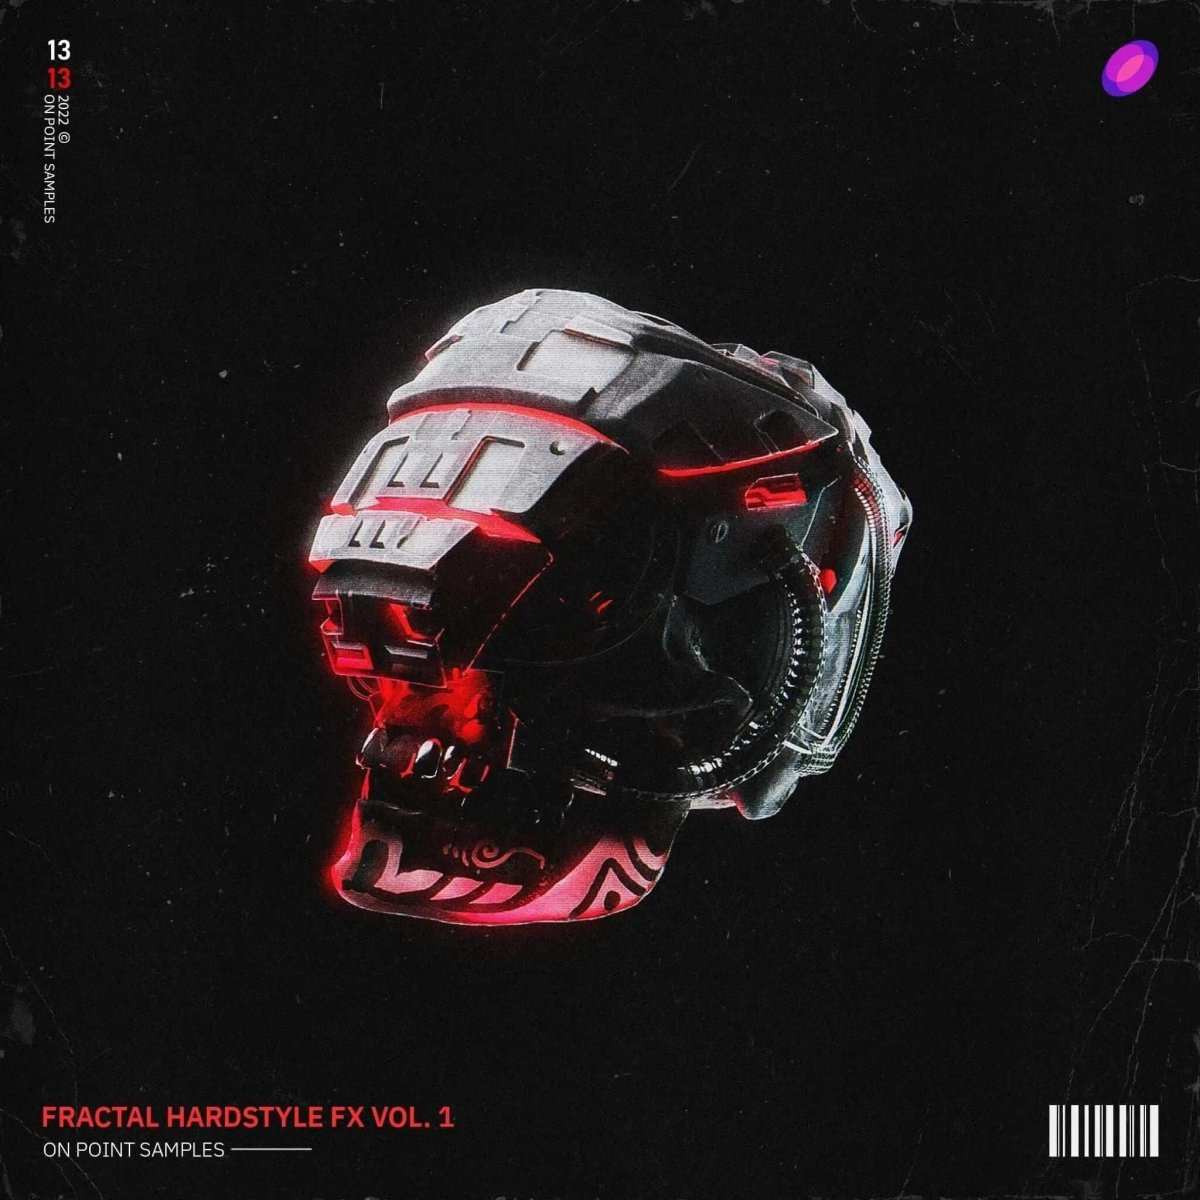 Fractal Hardstyle FX Vol. 1 - Hardstyle - On Point Samples